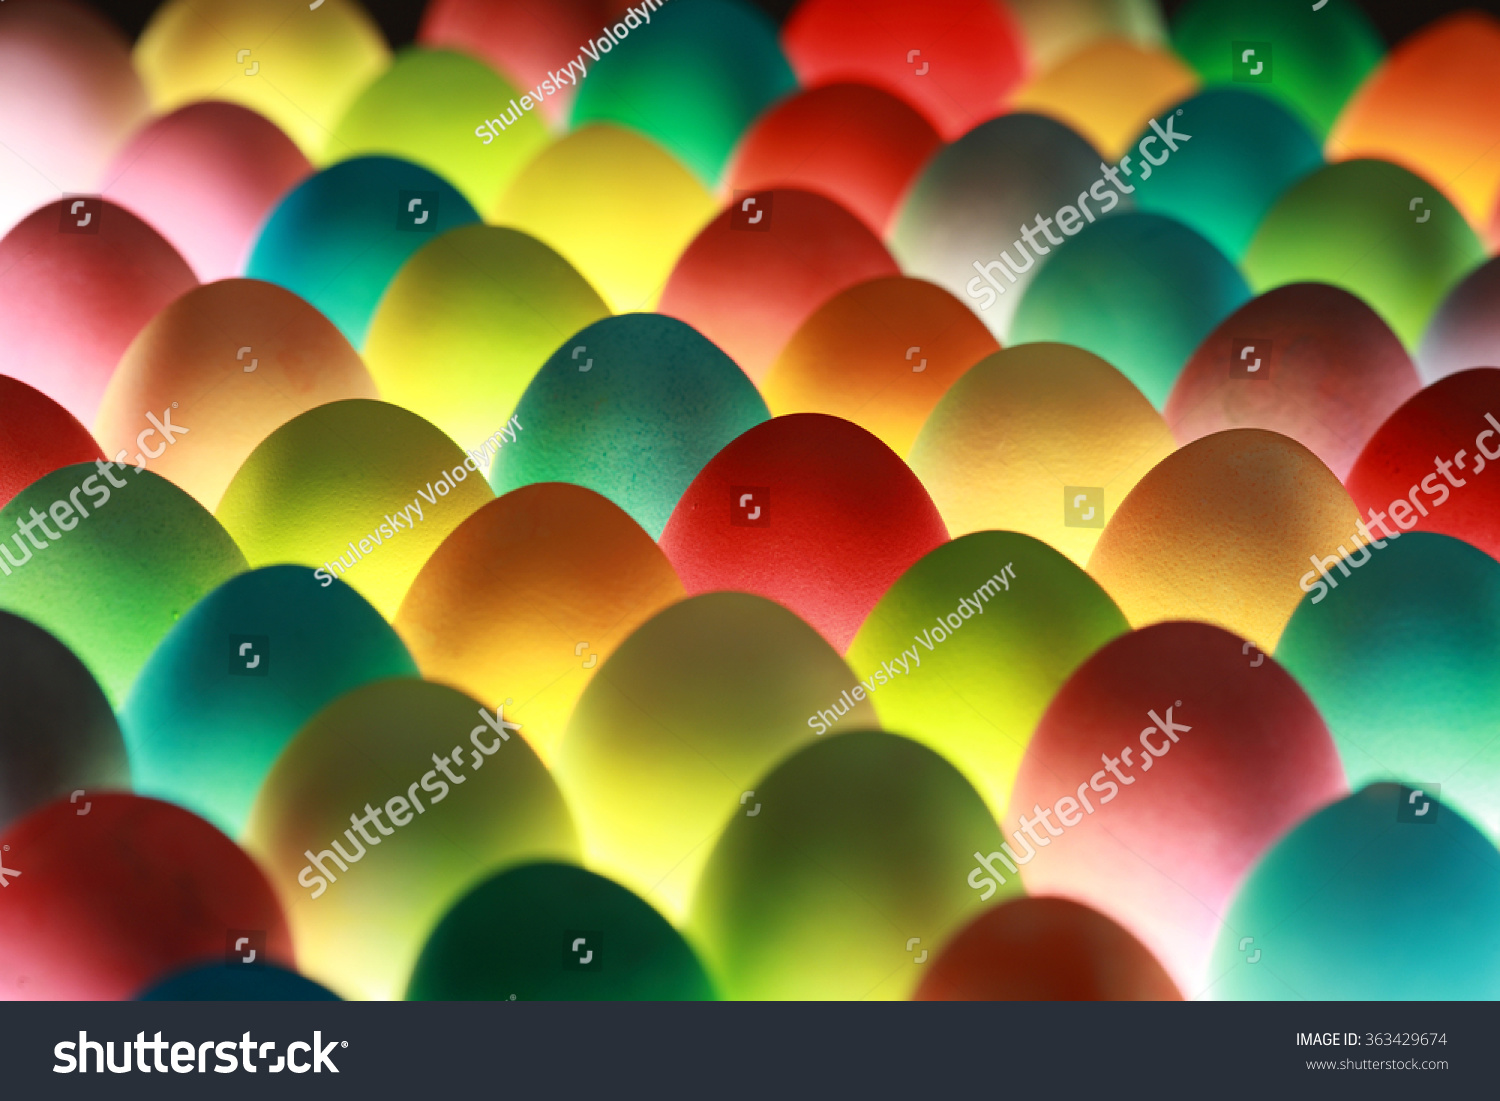 Easter Eggs Background Stock Photo 363429674 - Shutterstock